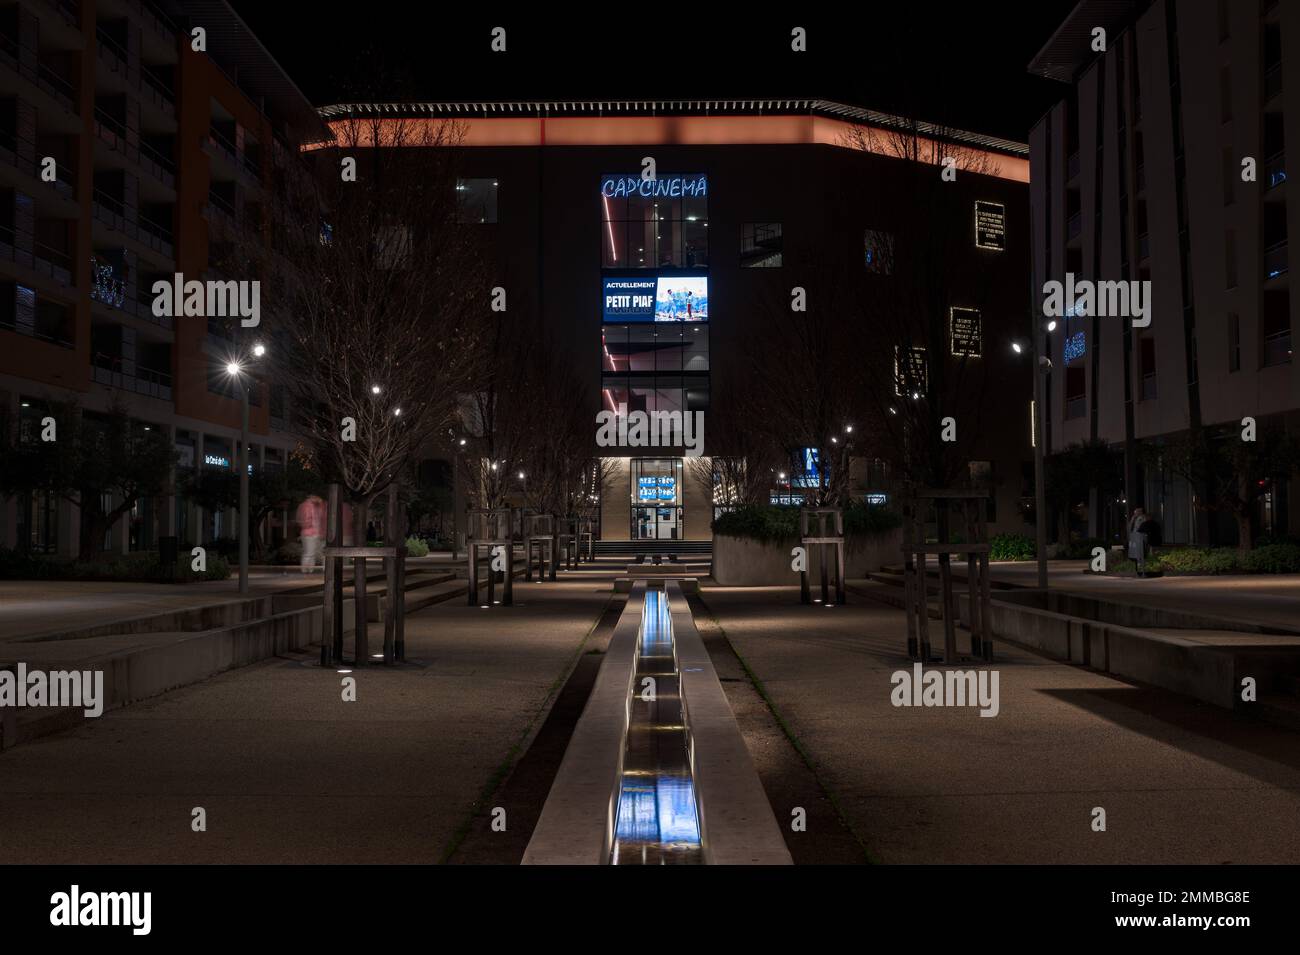 Nimes, Occitanie, Francia, 12 31 2022 - Escena nocturna iluminada de una plaza y una fuente detrás de la estación de tren Foto de stock